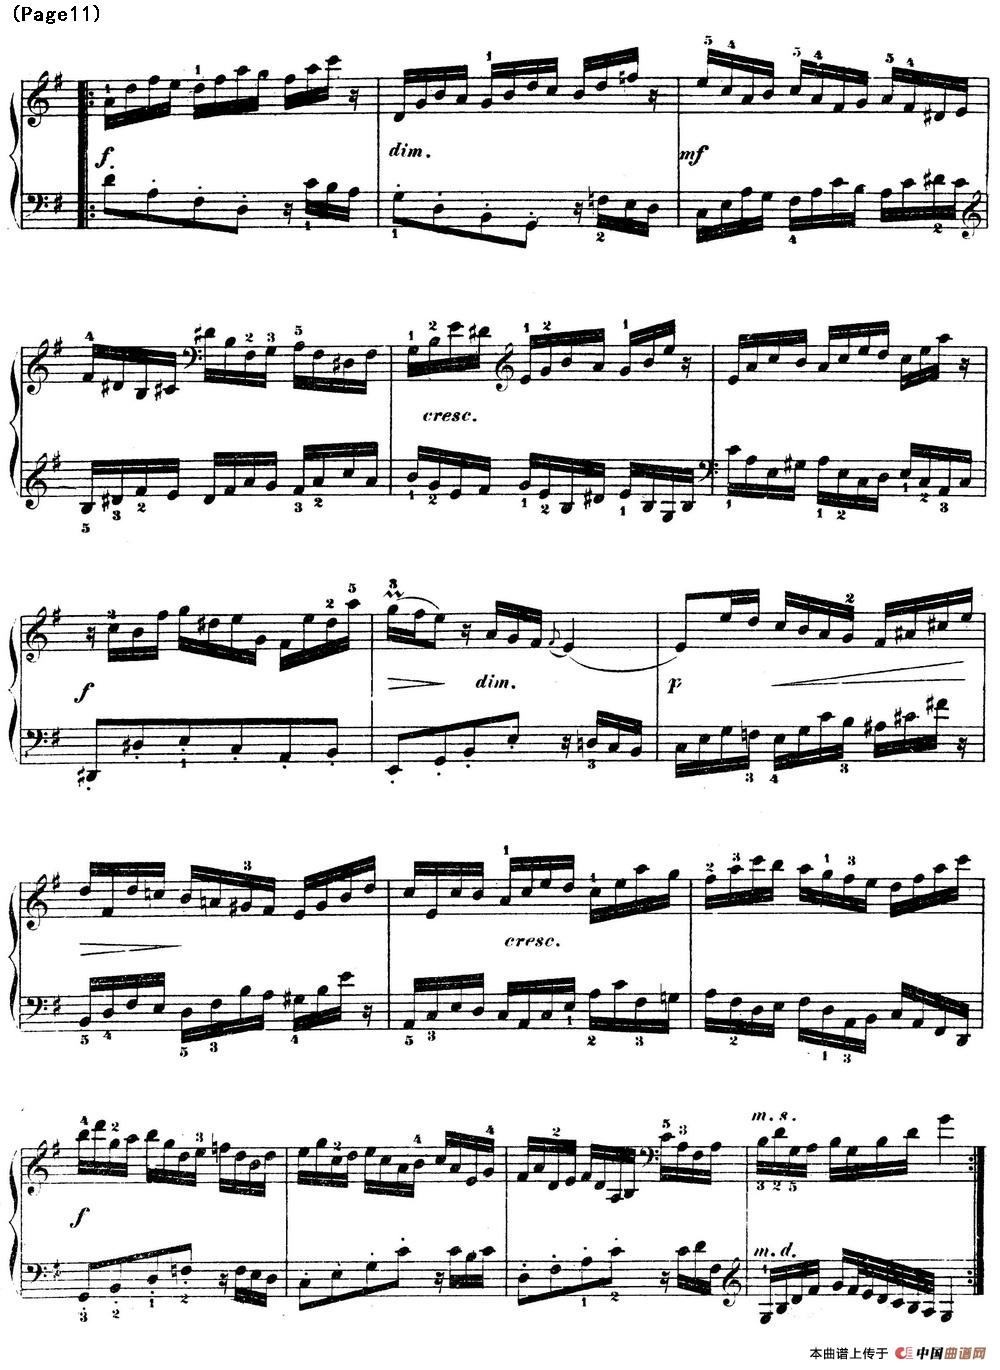 哥德堡变奏曲 巴赫 Goldberg Variationen BWV988(1)_Goldberg Variationen BWV988_页面_13.jpg